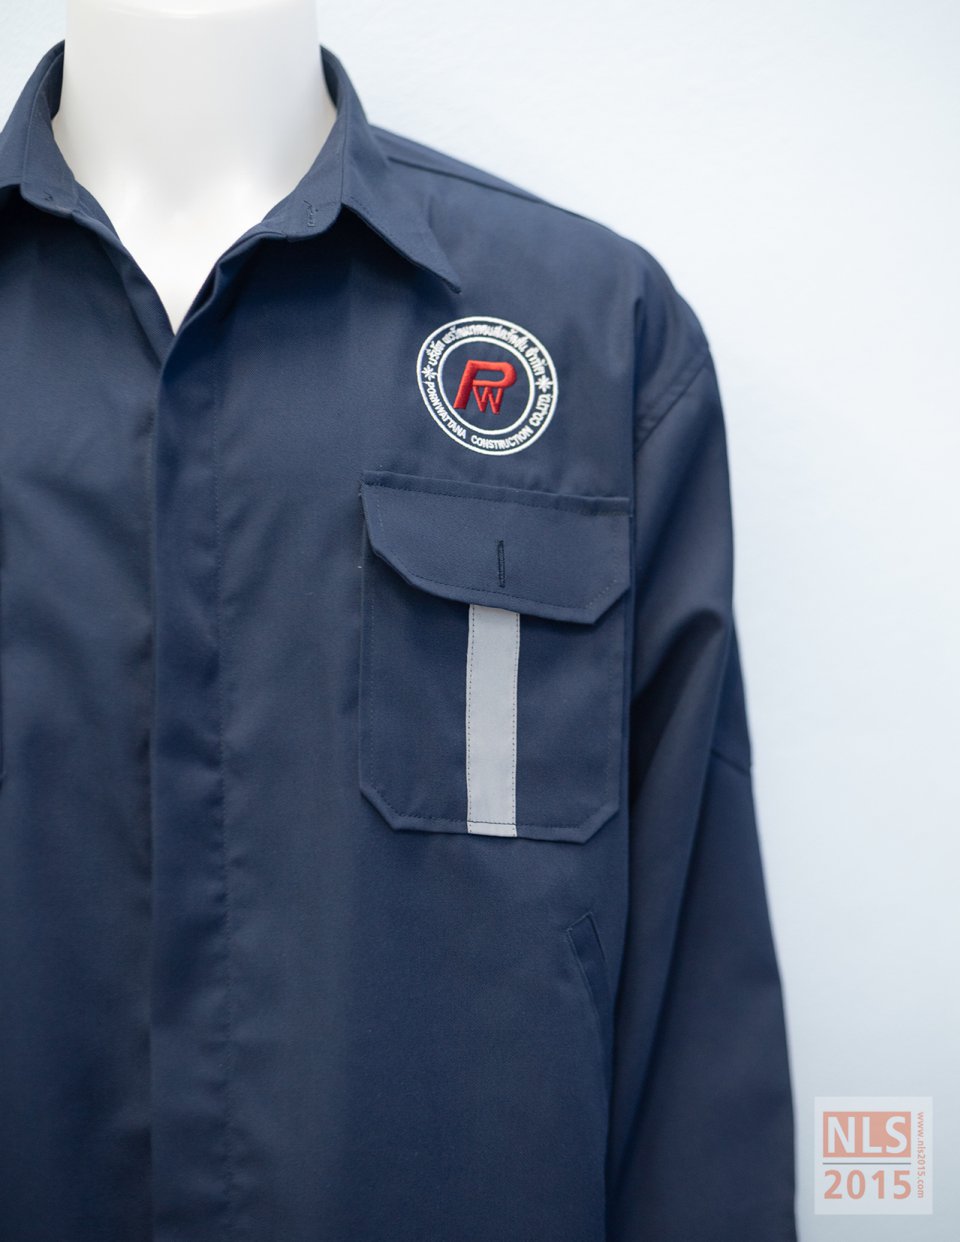 โรงงาน ตัดชุดฟอร์มพนักงาน เสื้อช้อปช่าง เสื้อเชิ้ต เสื้อโปโล กางเกงพนักงาน นลินสิริ 2015 ศรีราชา ชลบุรีรูปที่ 